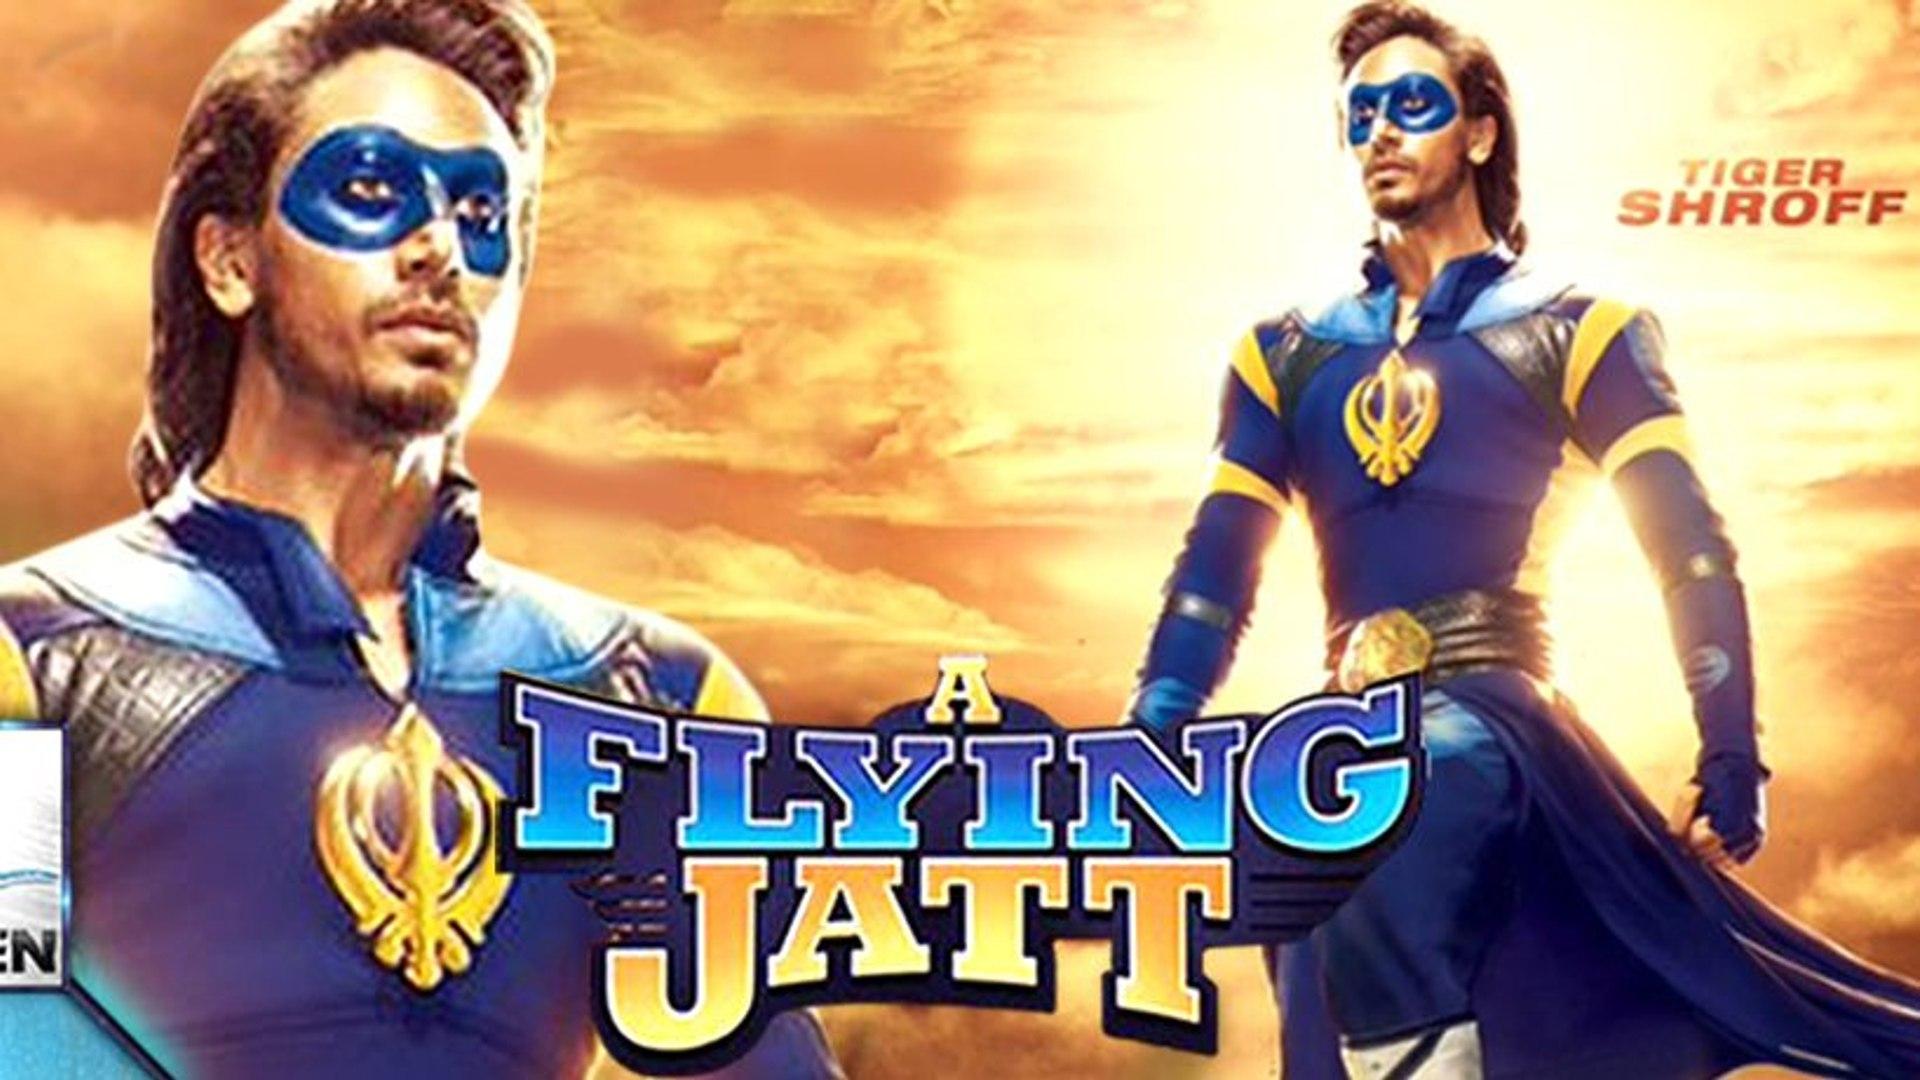 August 2016}_ A Flying Jatt Hindi Movie Official trailer 2016